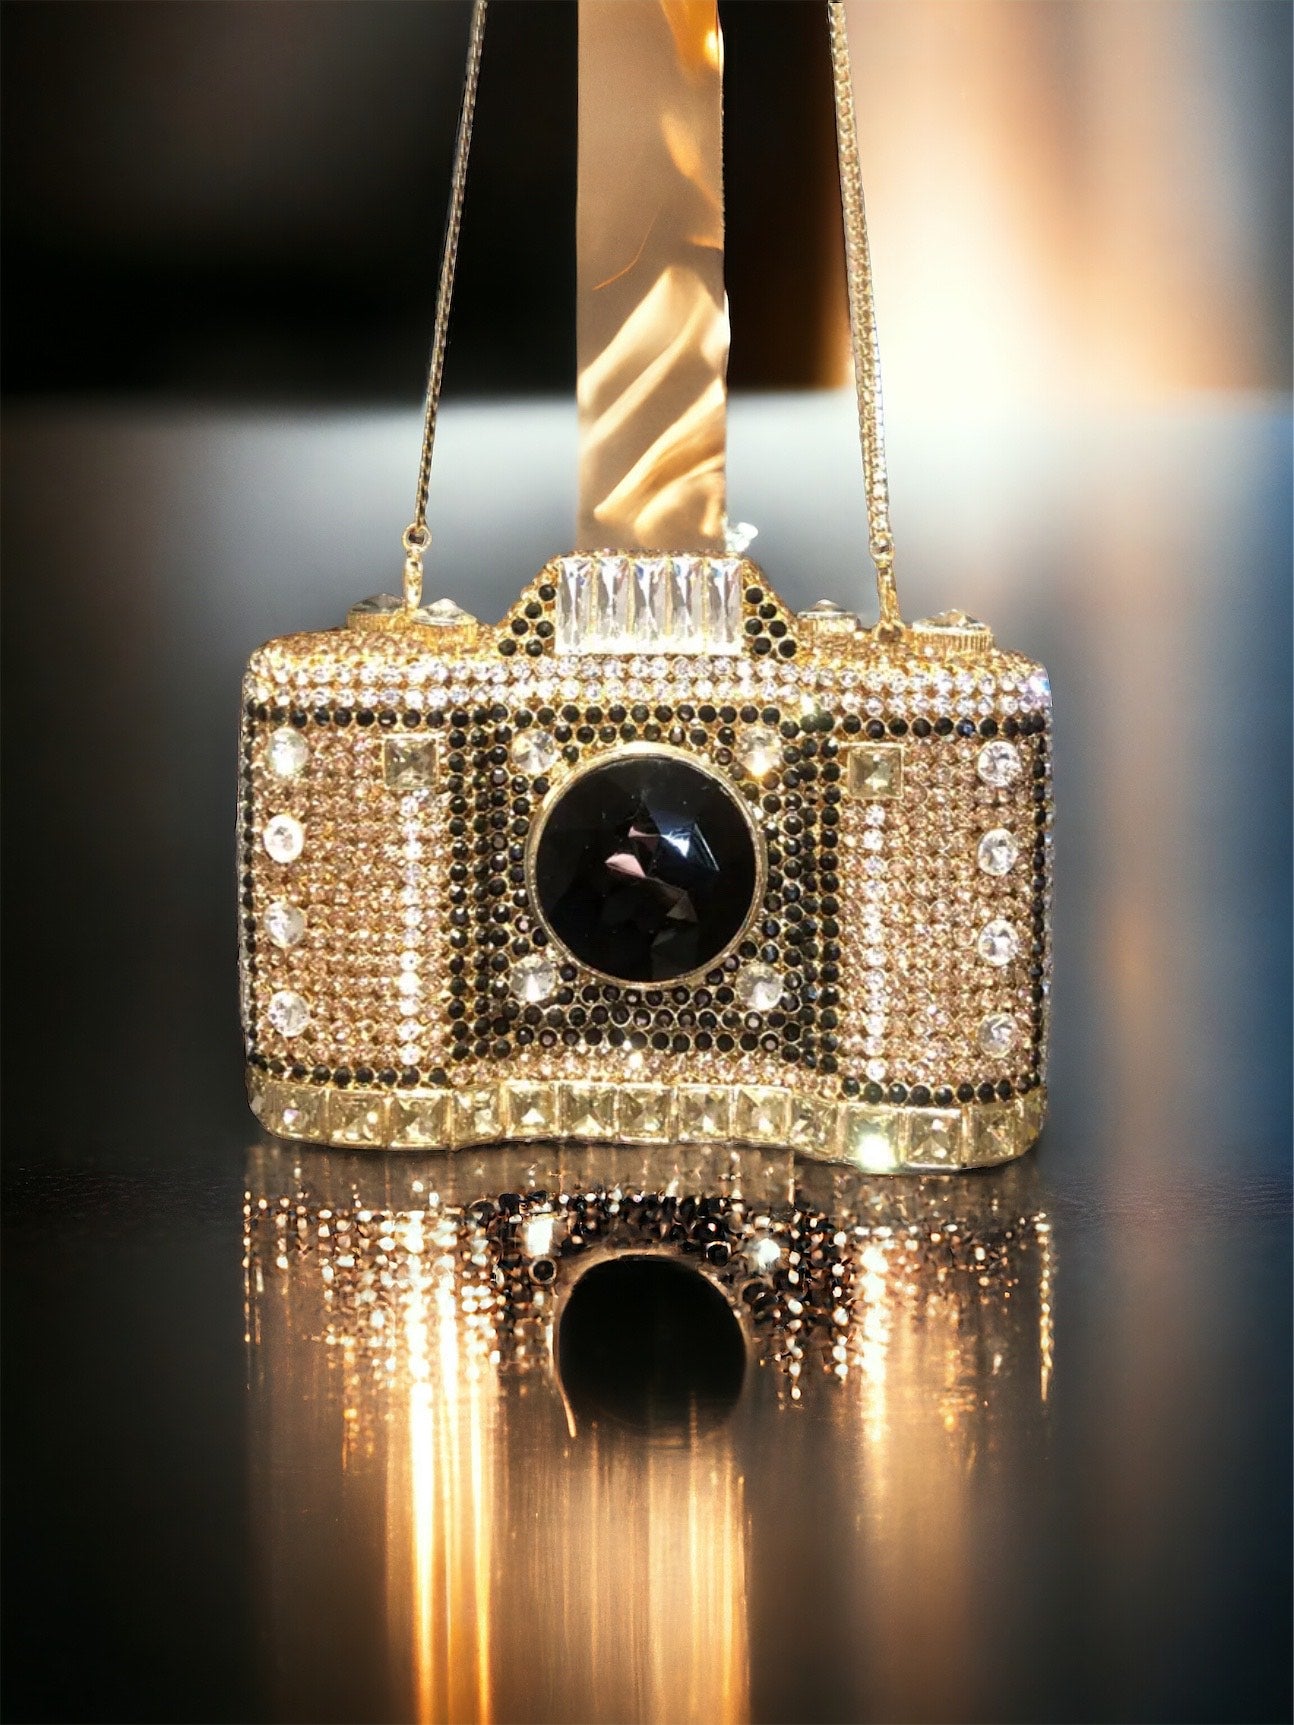 Mini Camera Crystal/rhinestone Evening Clutch Purse Wedding Party Hand Bags